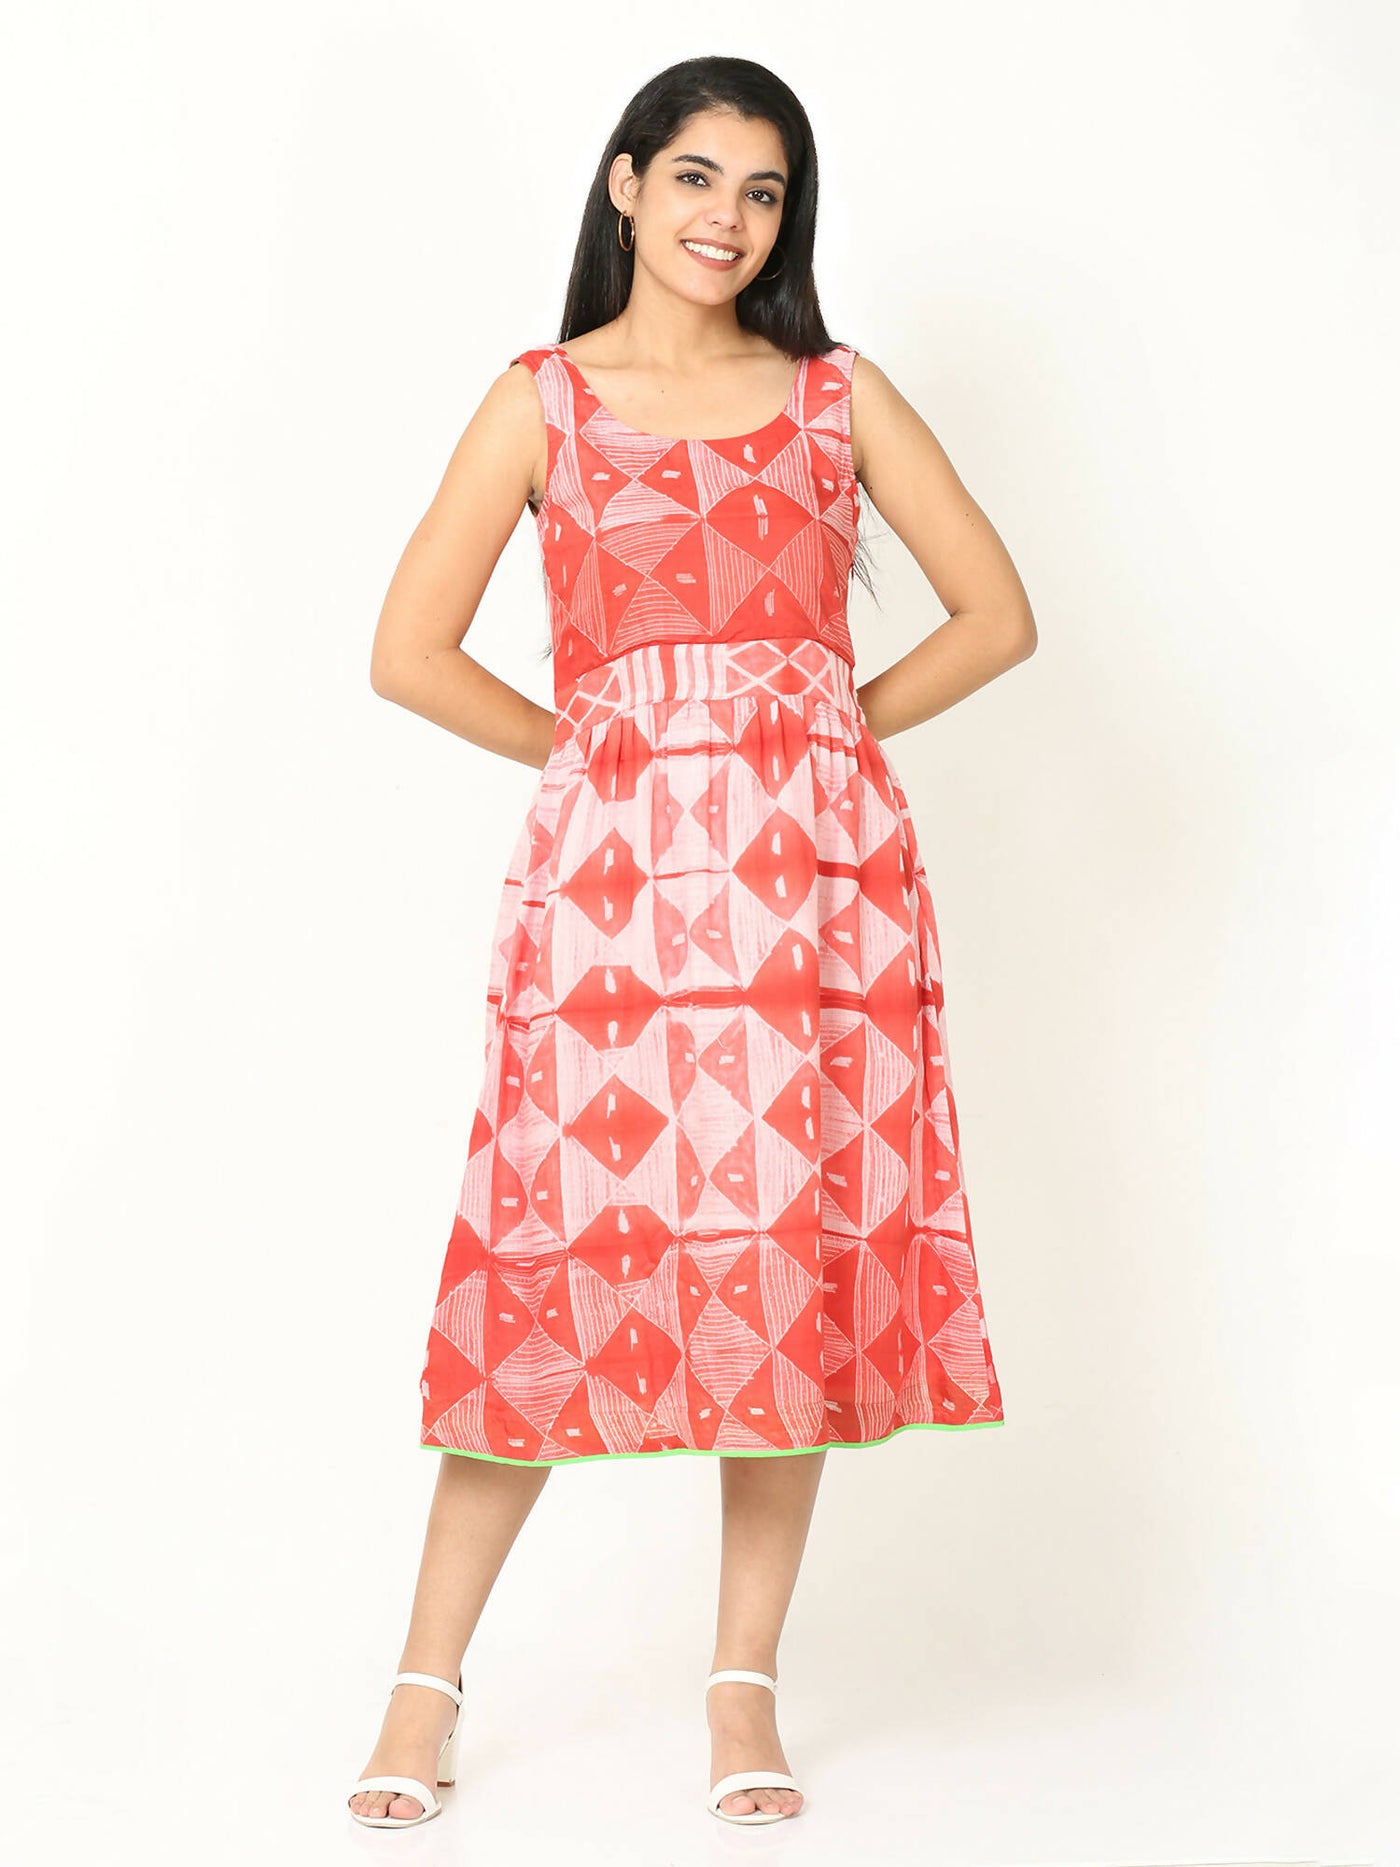 Shibori knotty dress